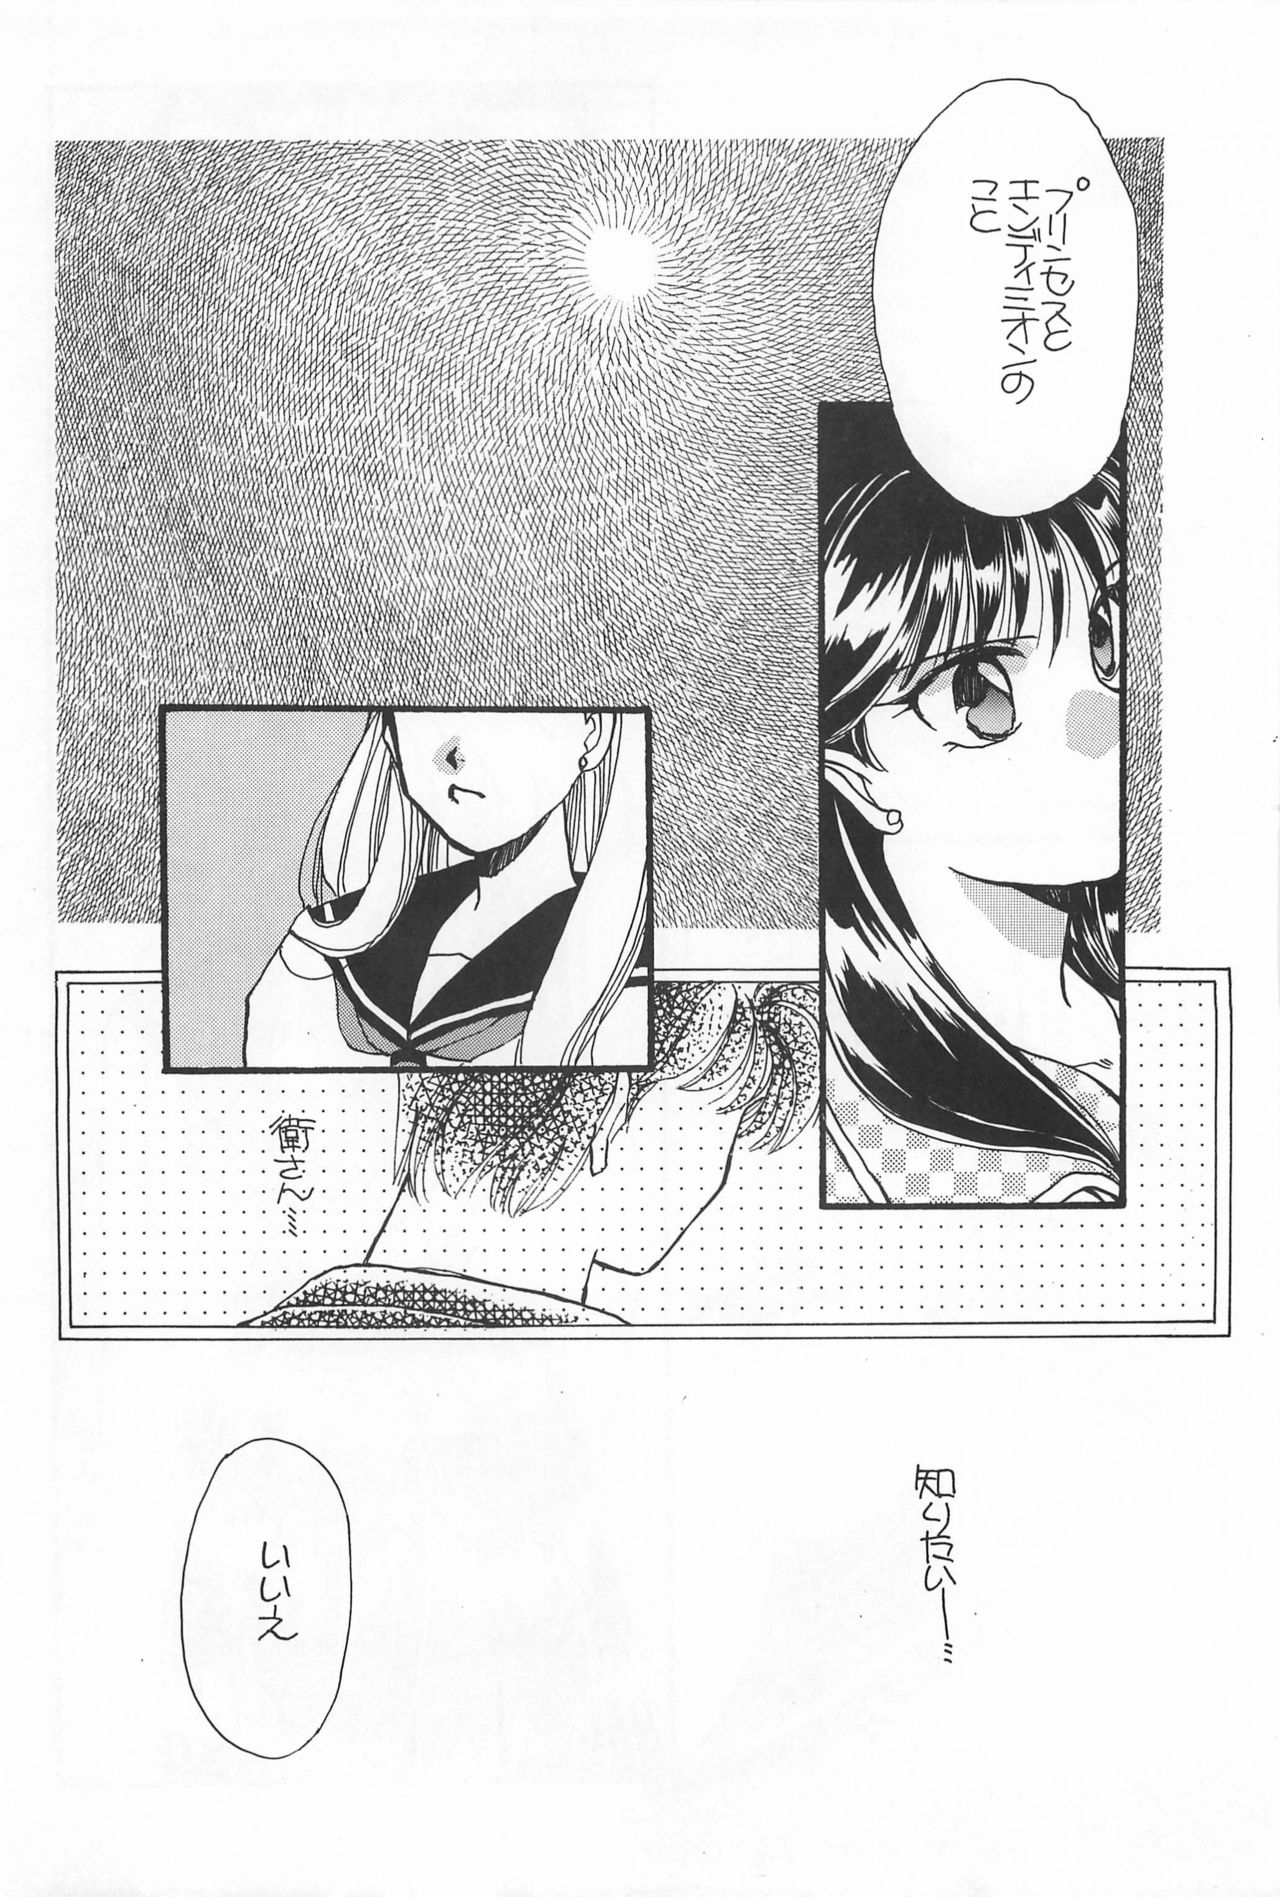 [Hello World (Muttri Moony)] Kaze no You ni Yume no You ni - Sailor Moon Collection (Sailor Moon) 129